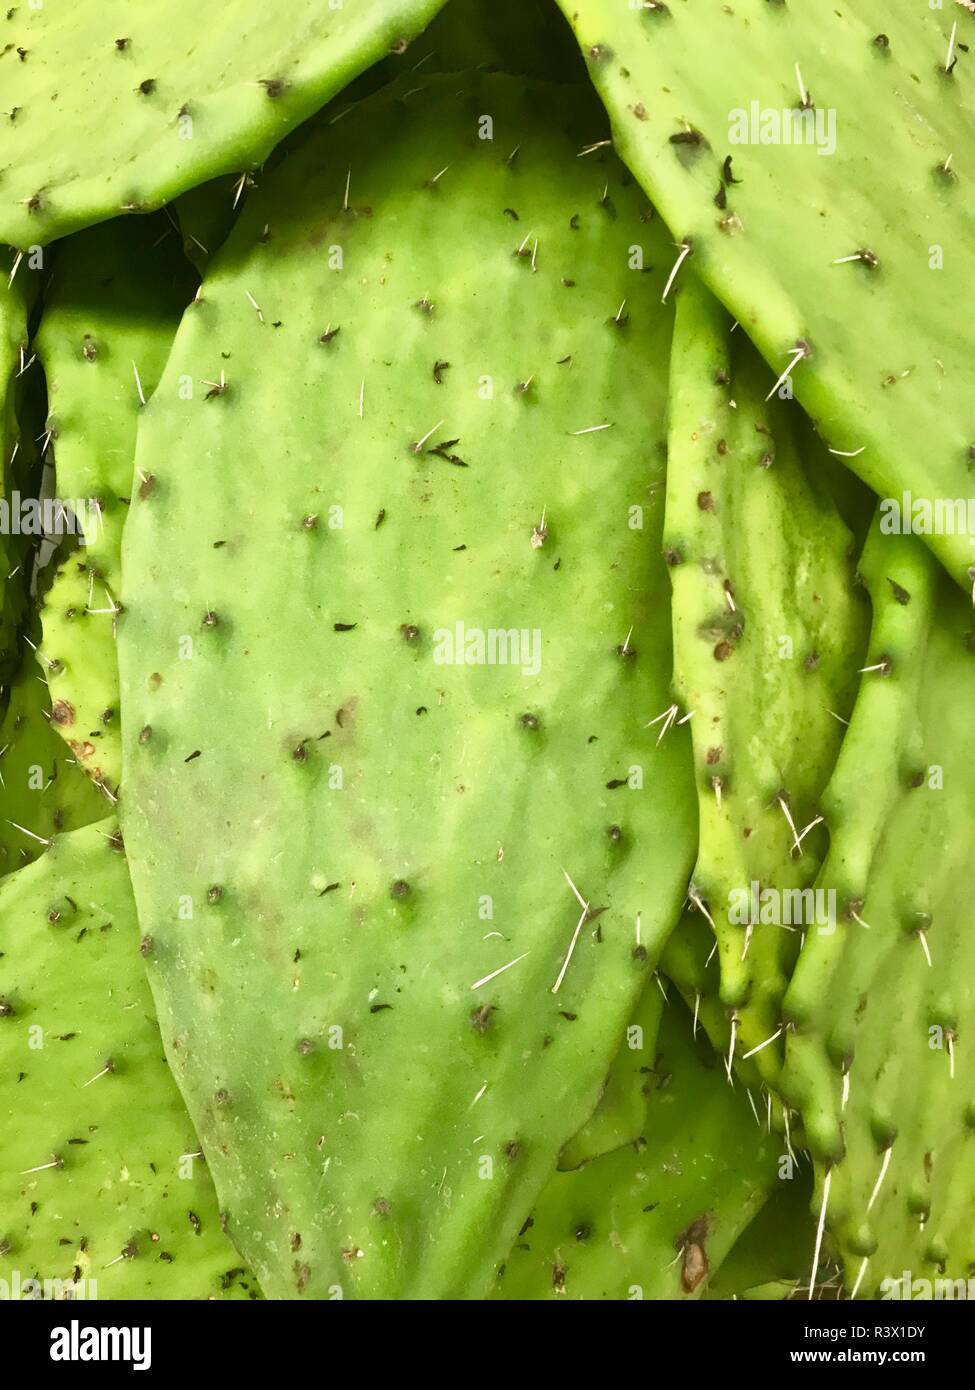 Un cactus comestible populaire appelé nopal dans la cuisine traditionnelle mexicaine typique Banque D'Images